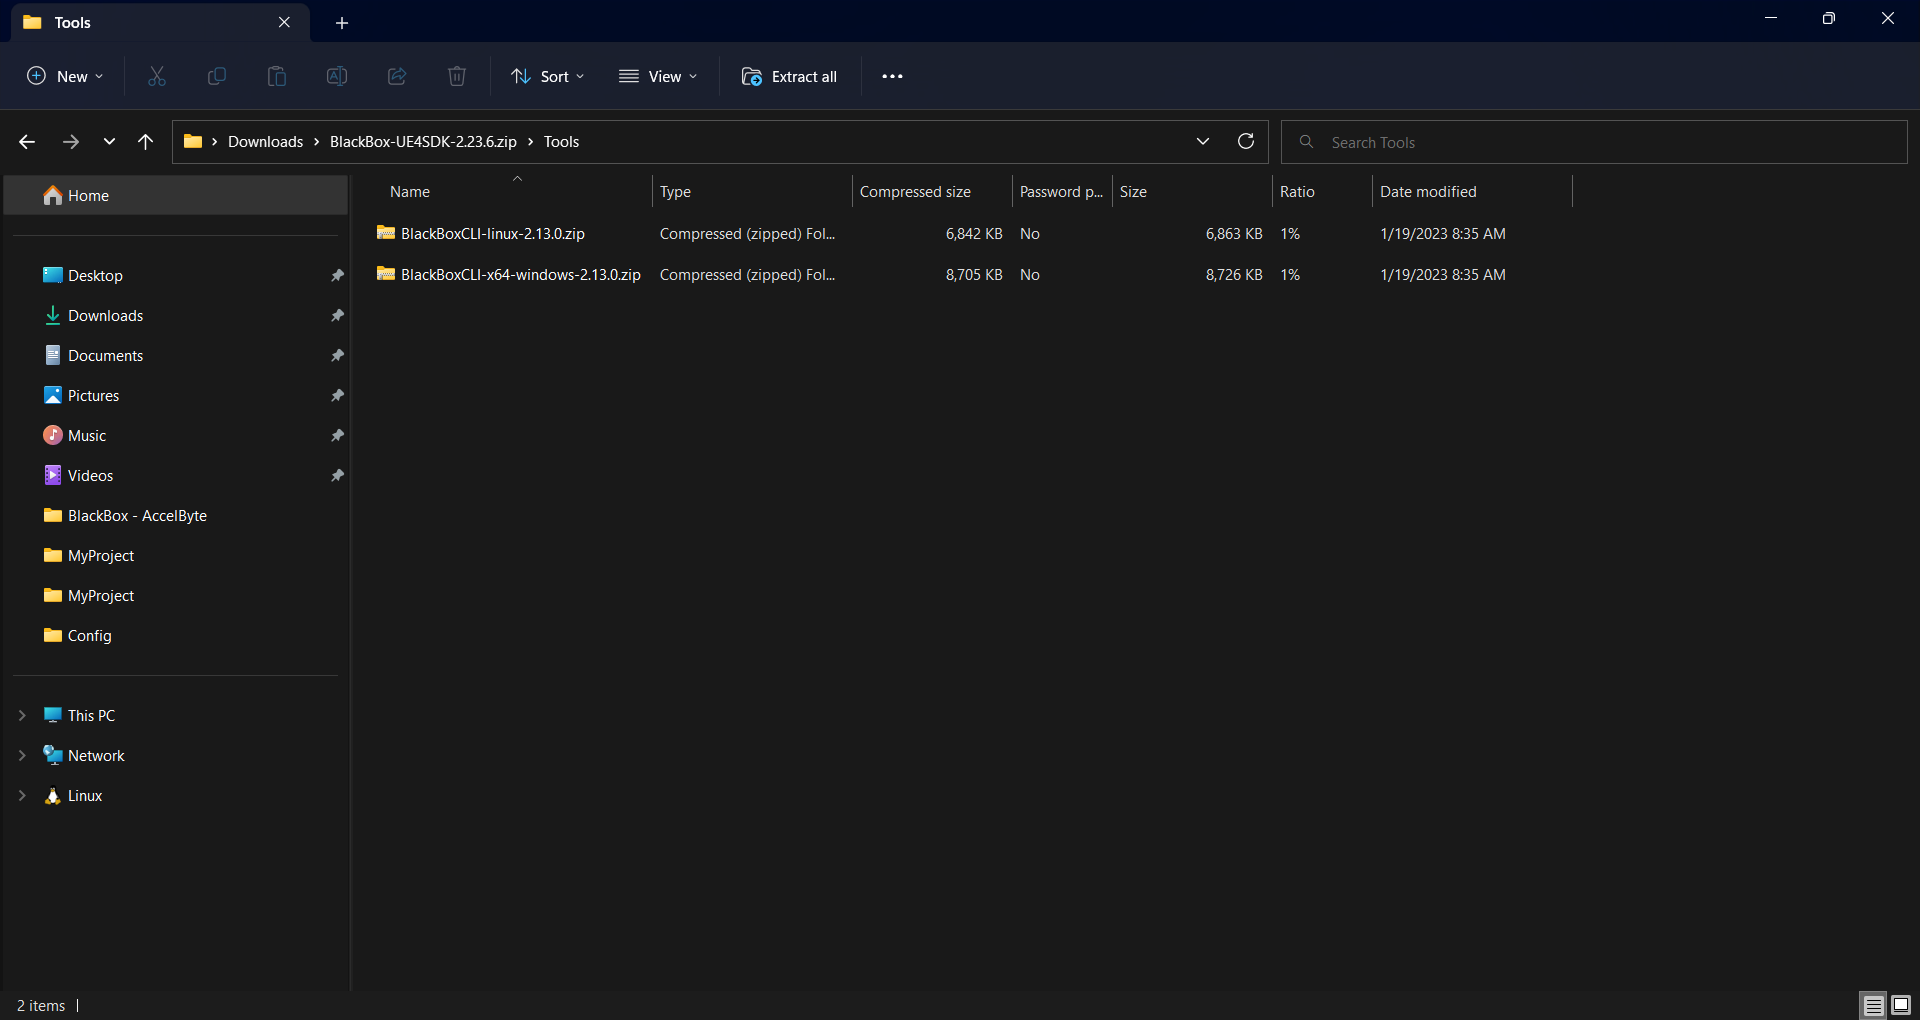 Image of the ADT Downloads-BlackBox-UE45DK-2.23.5.zip-Tools folder